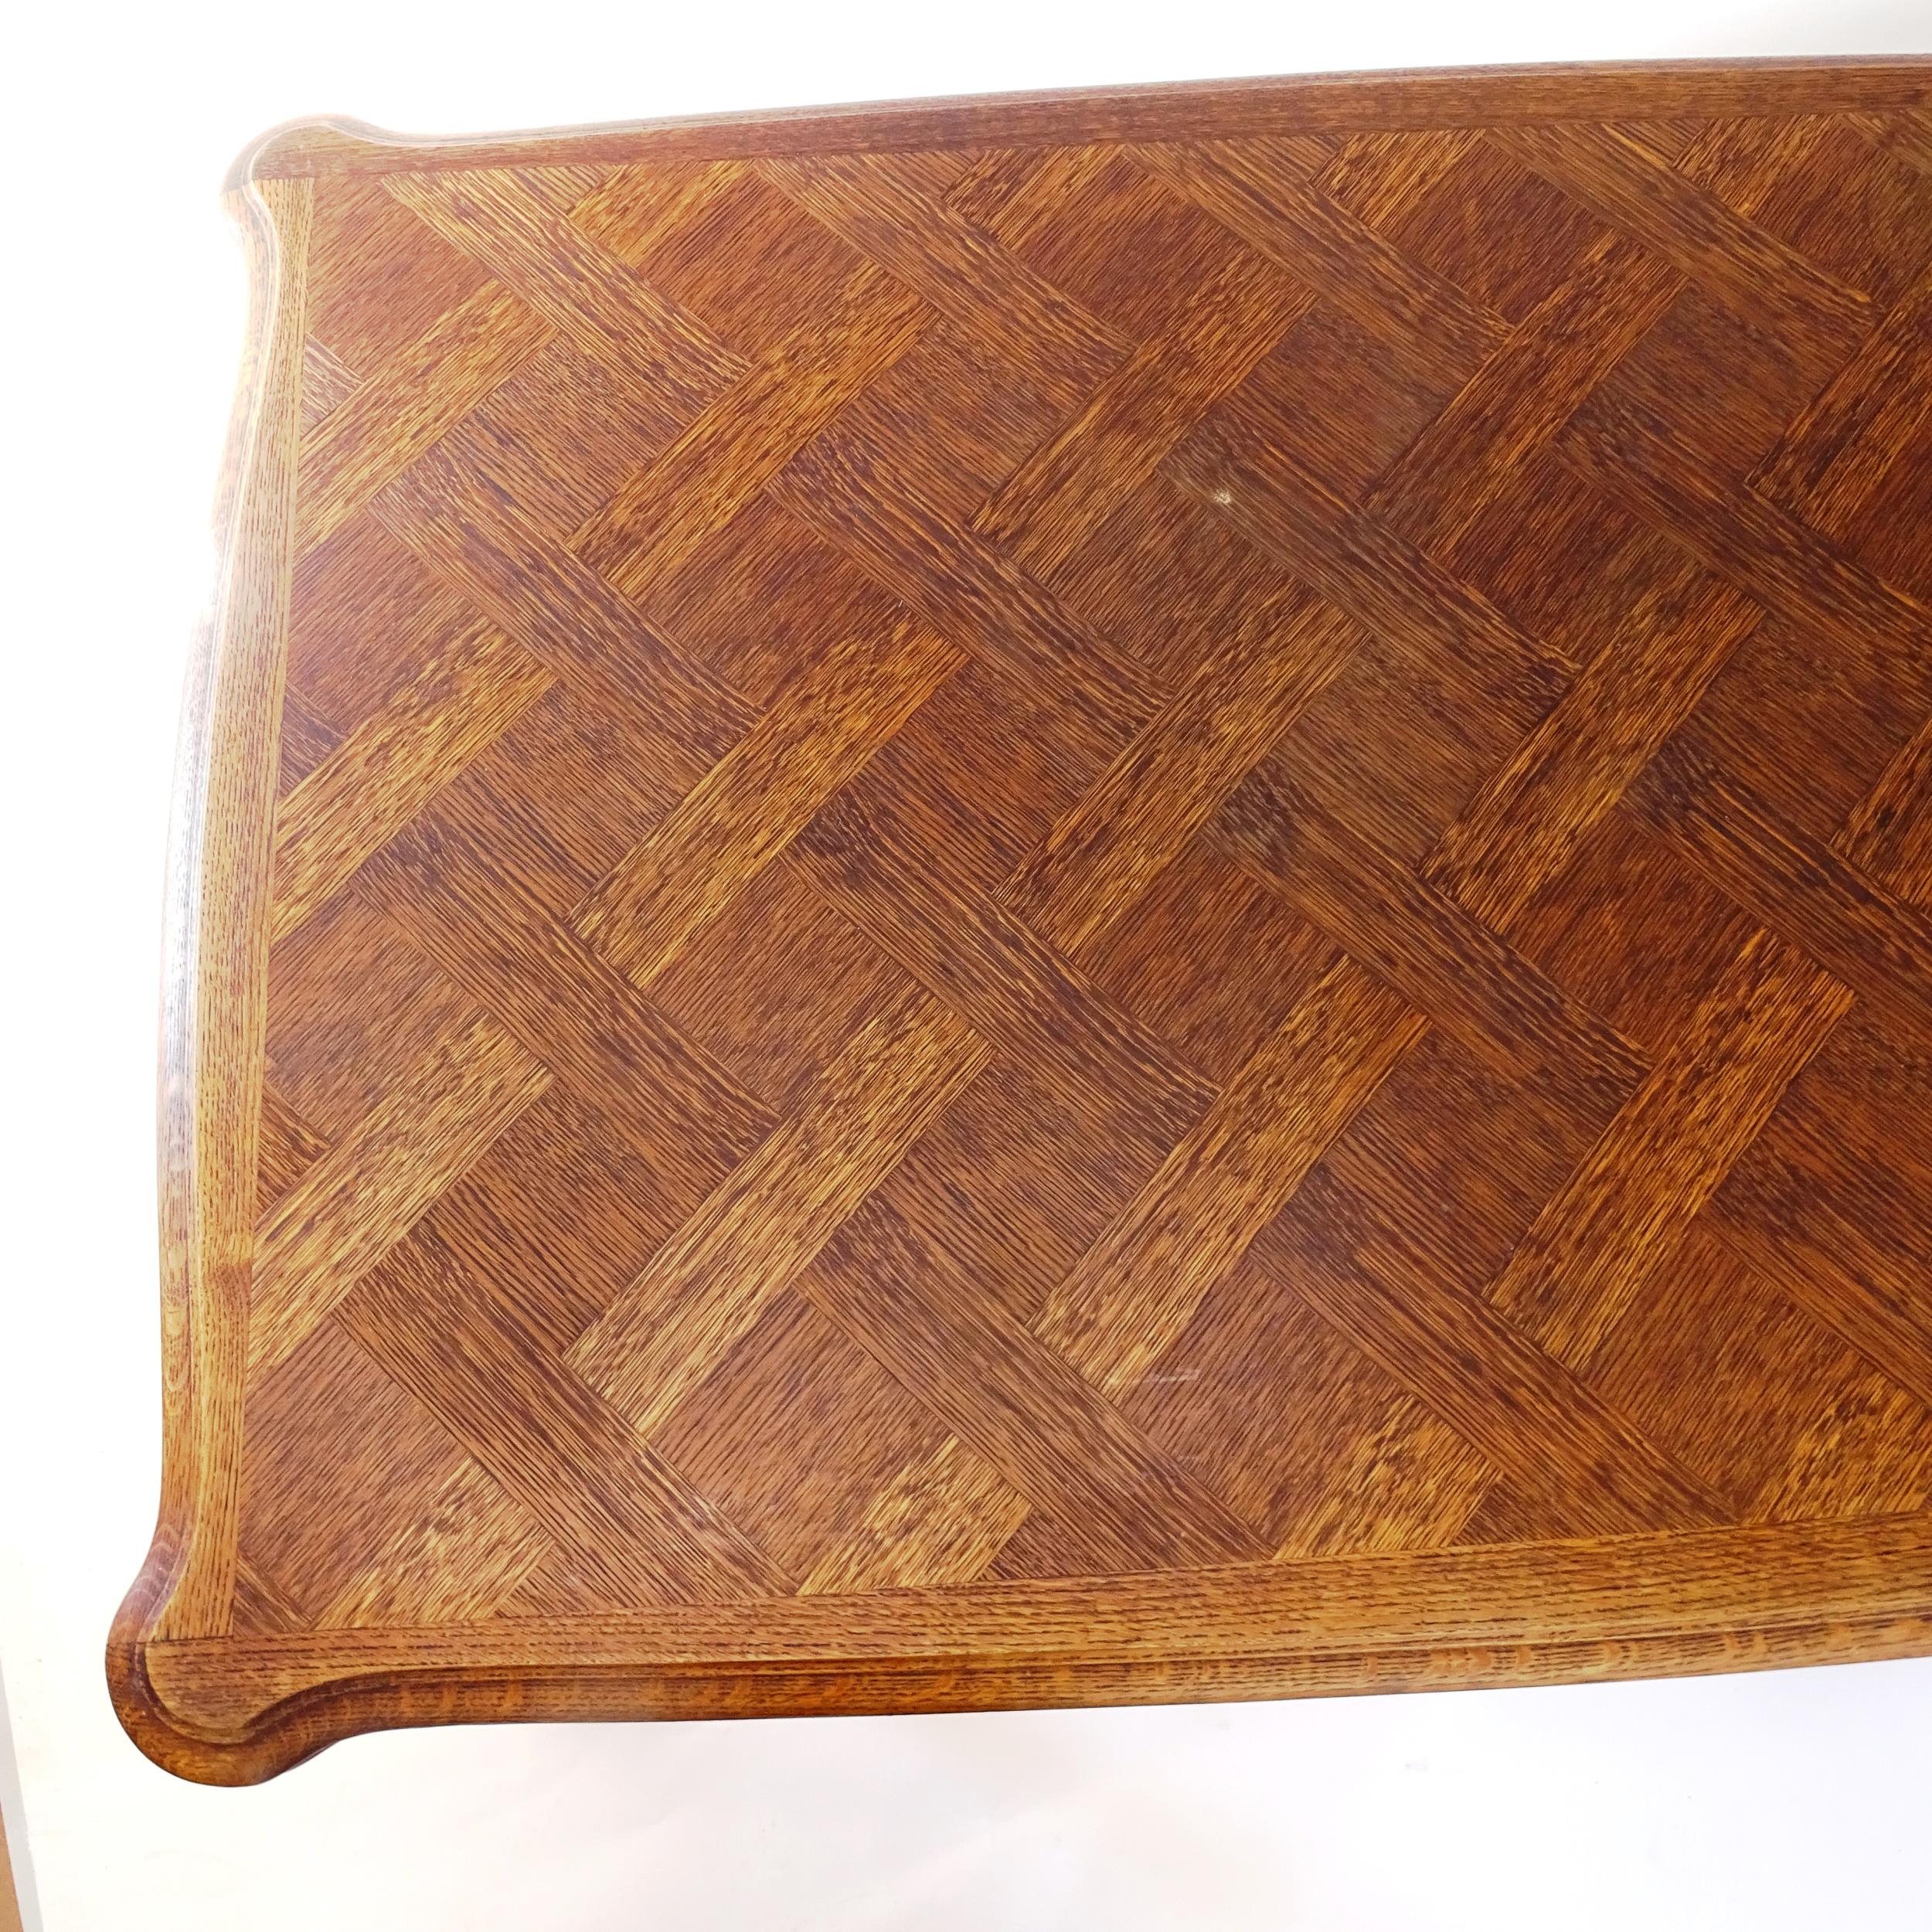 A French oak parquetry-top draw leaf table, L160cm extending to 260cm, H75cm, D97cm - Bild 2 aus 2